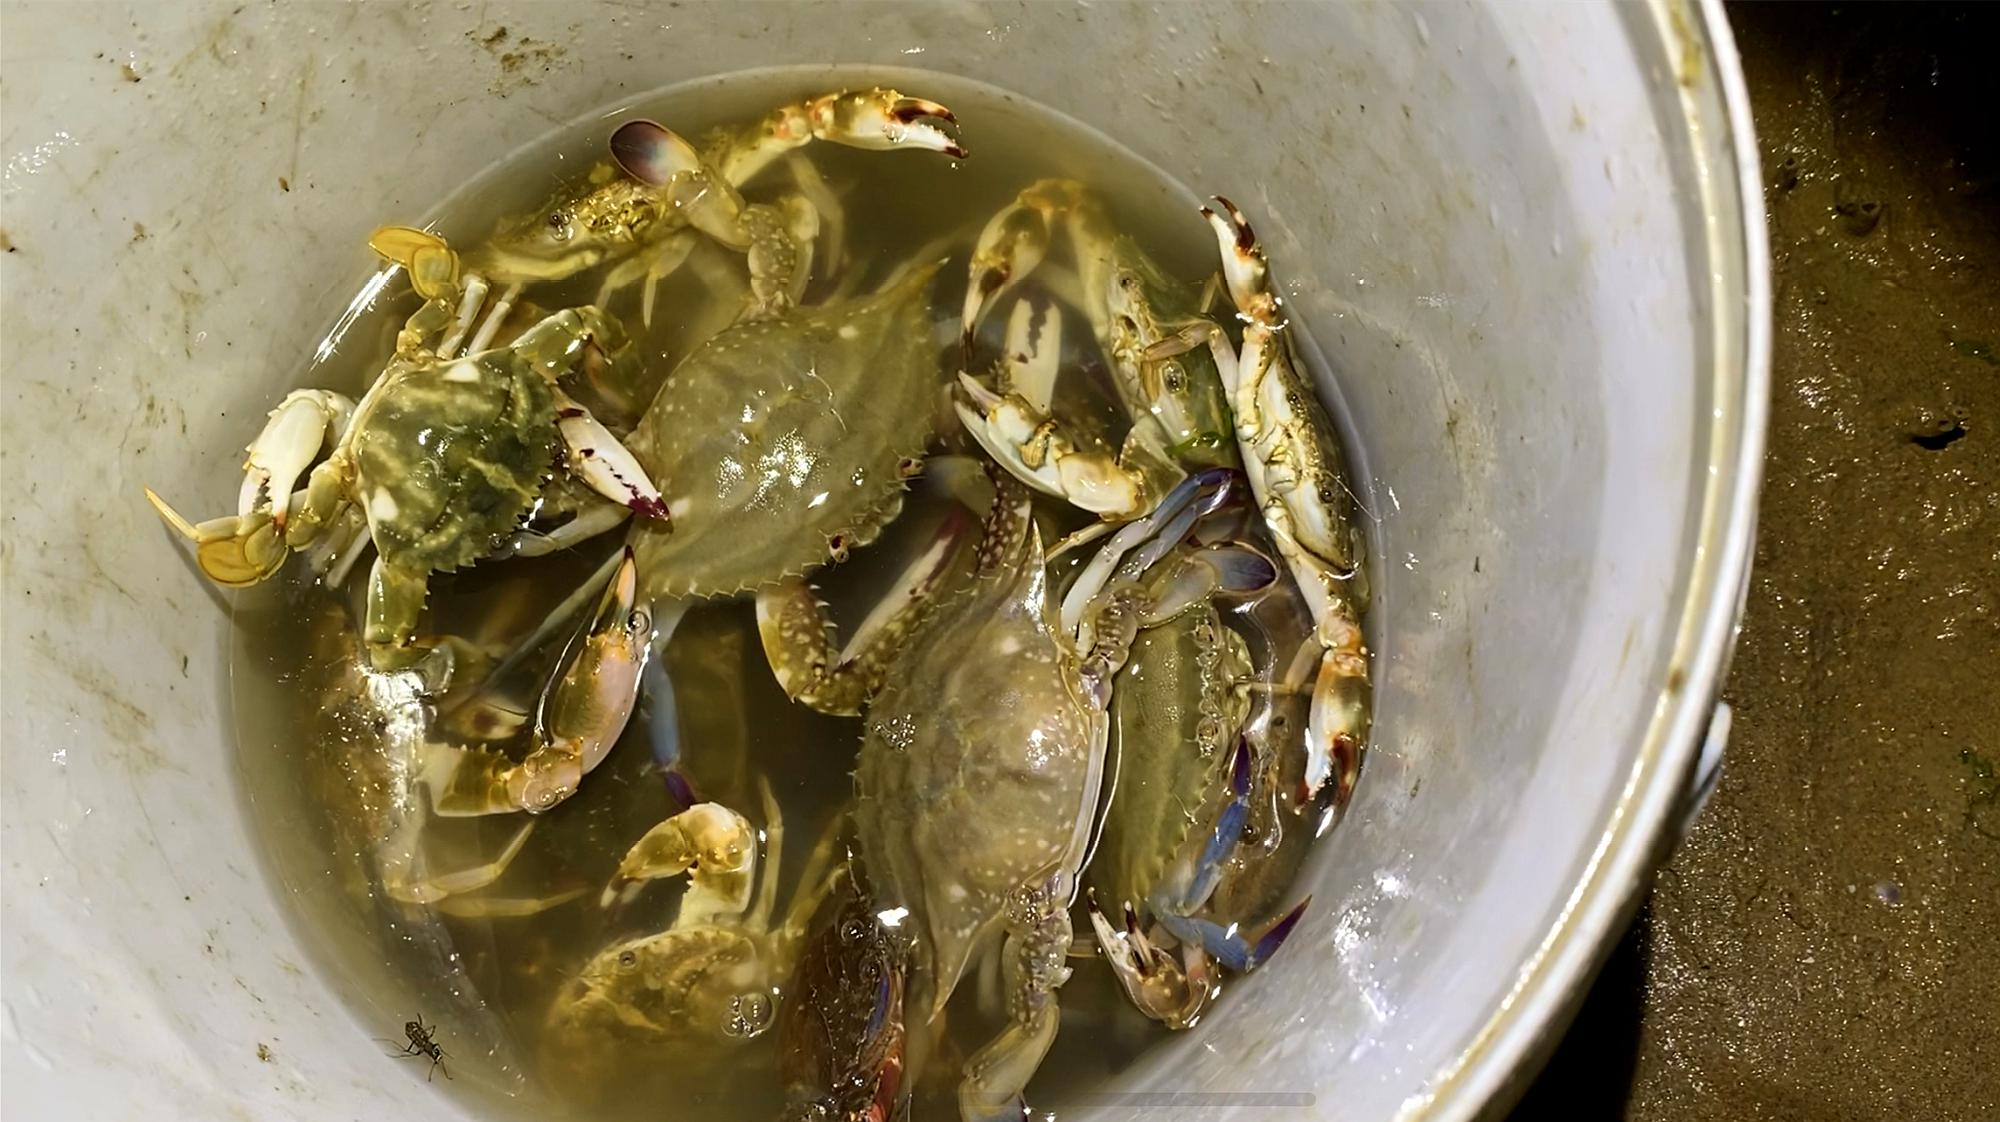 捞螃蟹、品螃蟹……他们这样过农民丰收节 -青报网-青岛日报官网